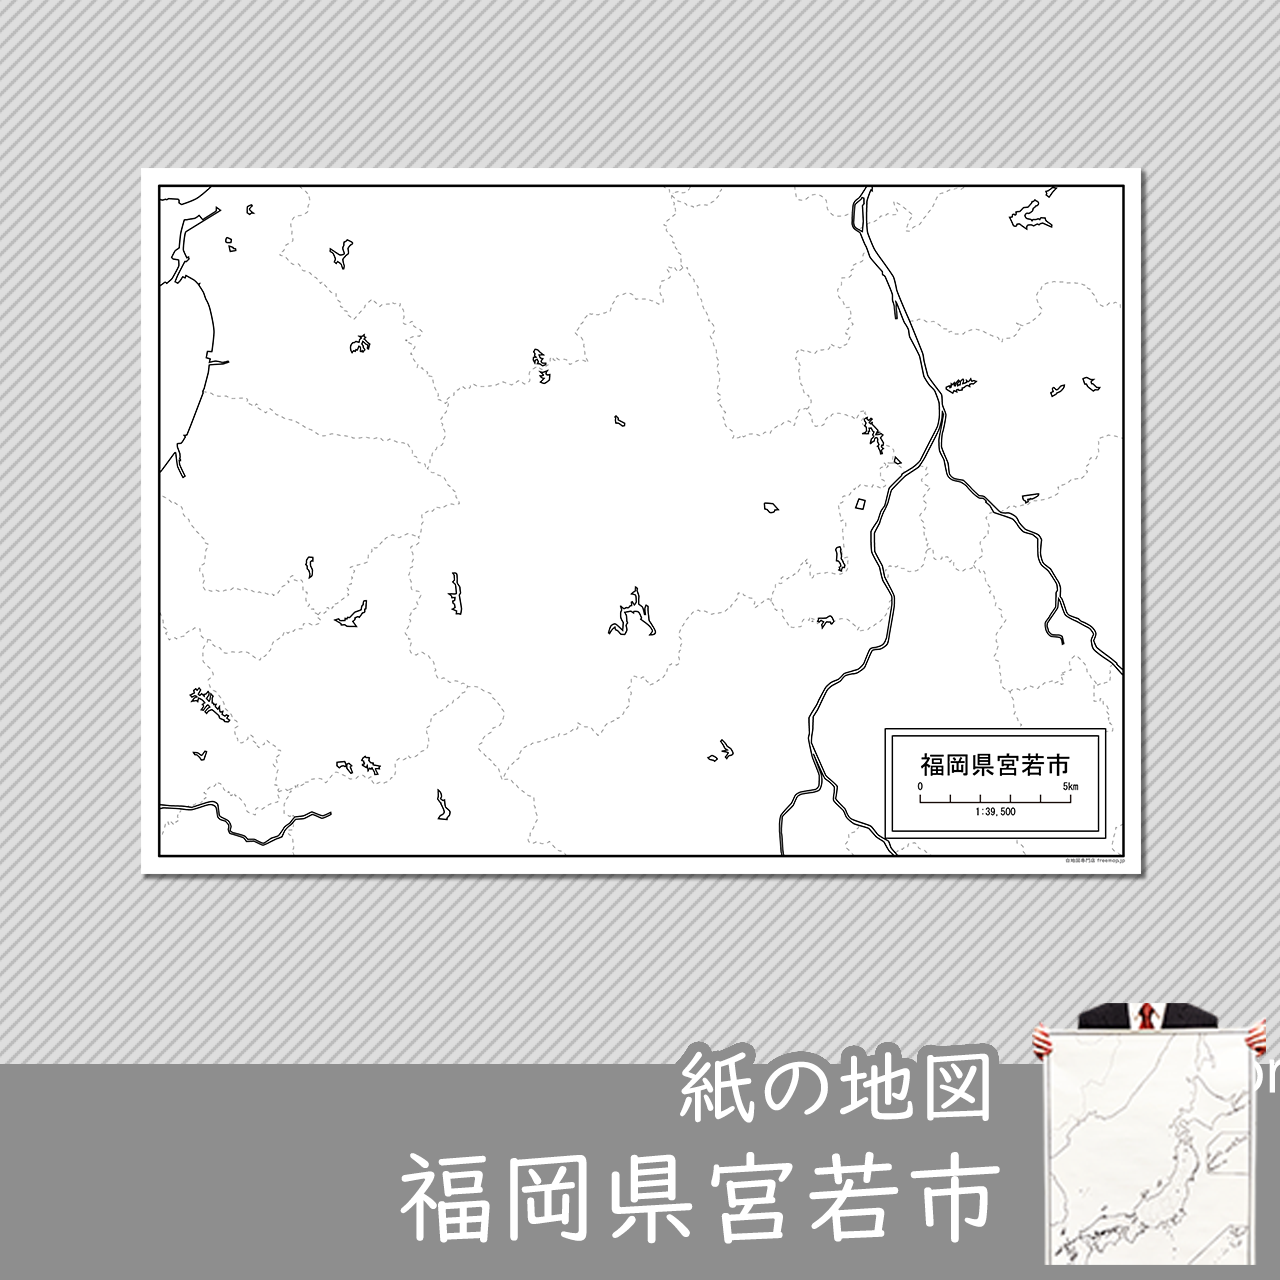 宮若市の紙の白地図のサムネイル